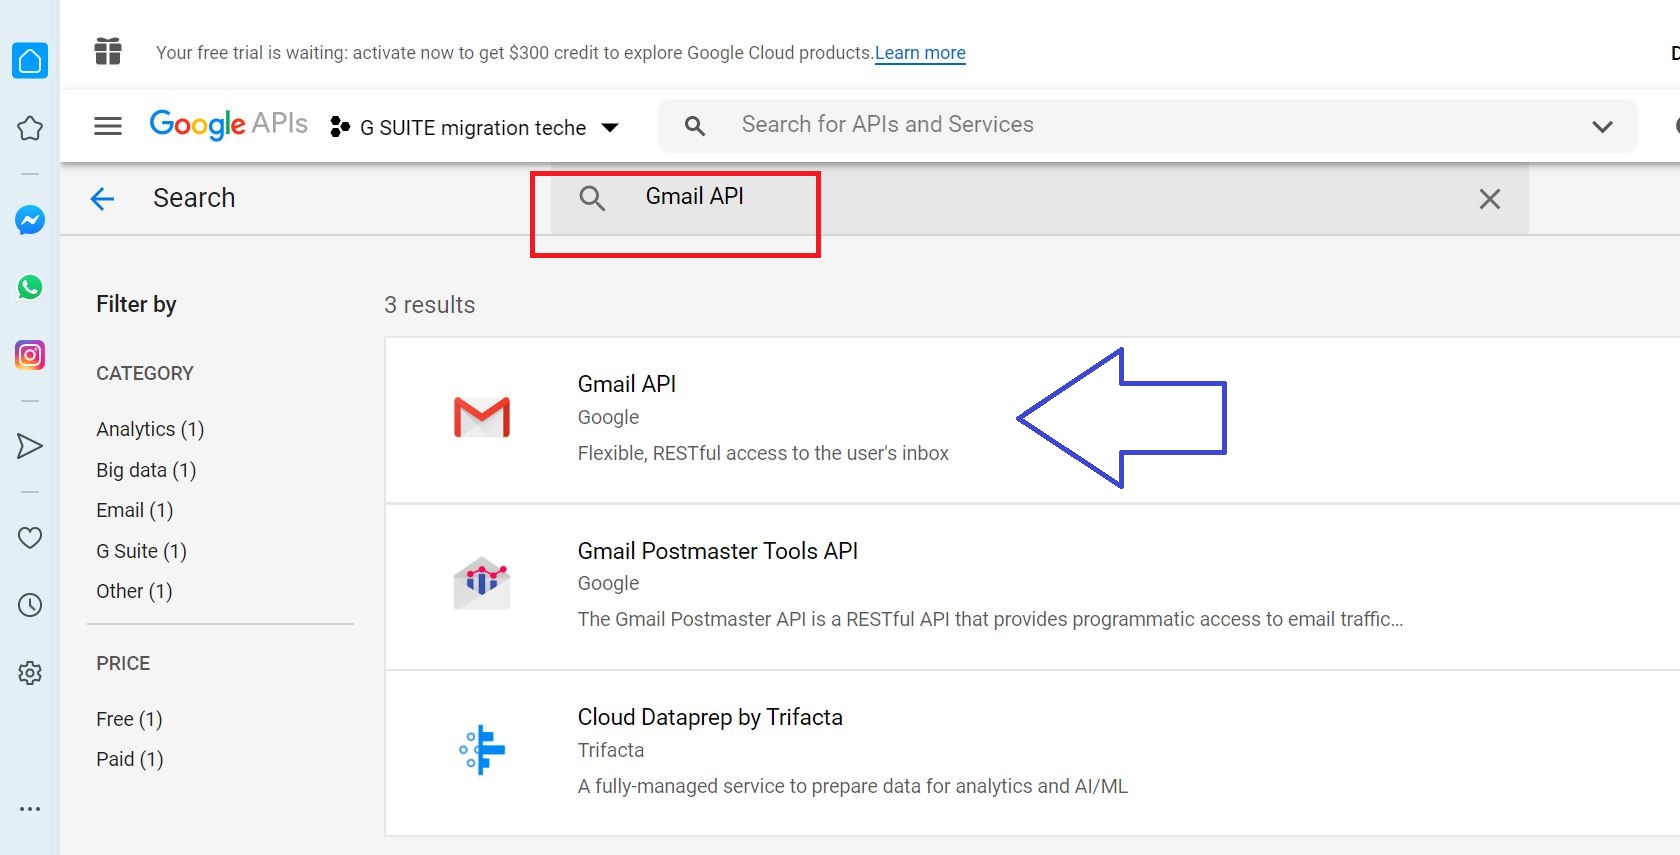 APIs 2 gmail api